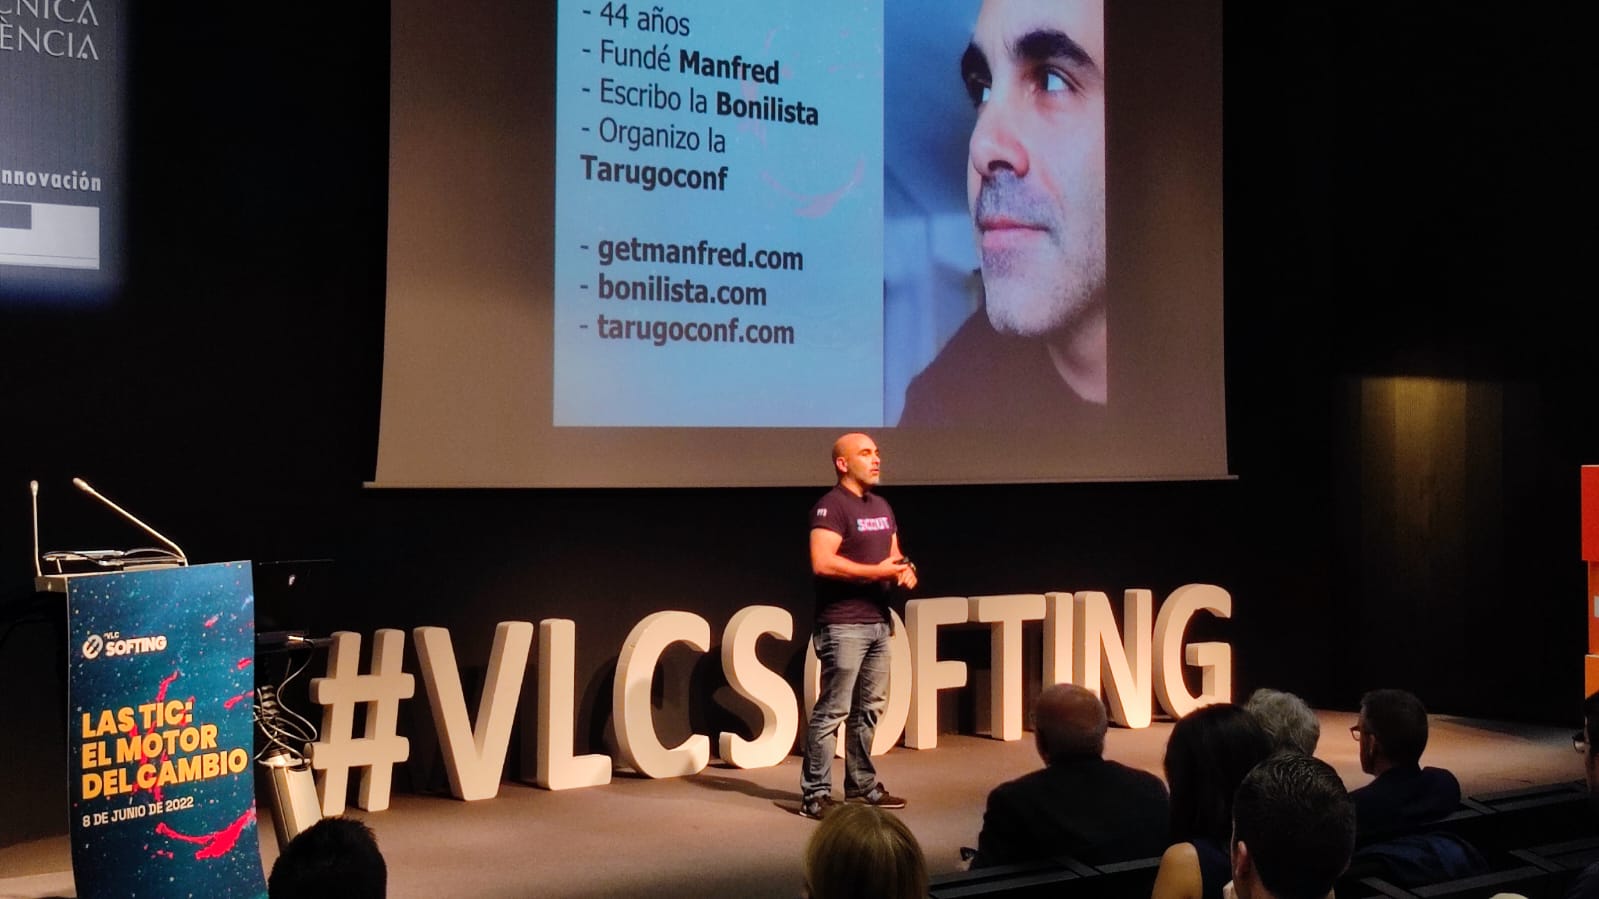 David Bonilla at VLC Softing